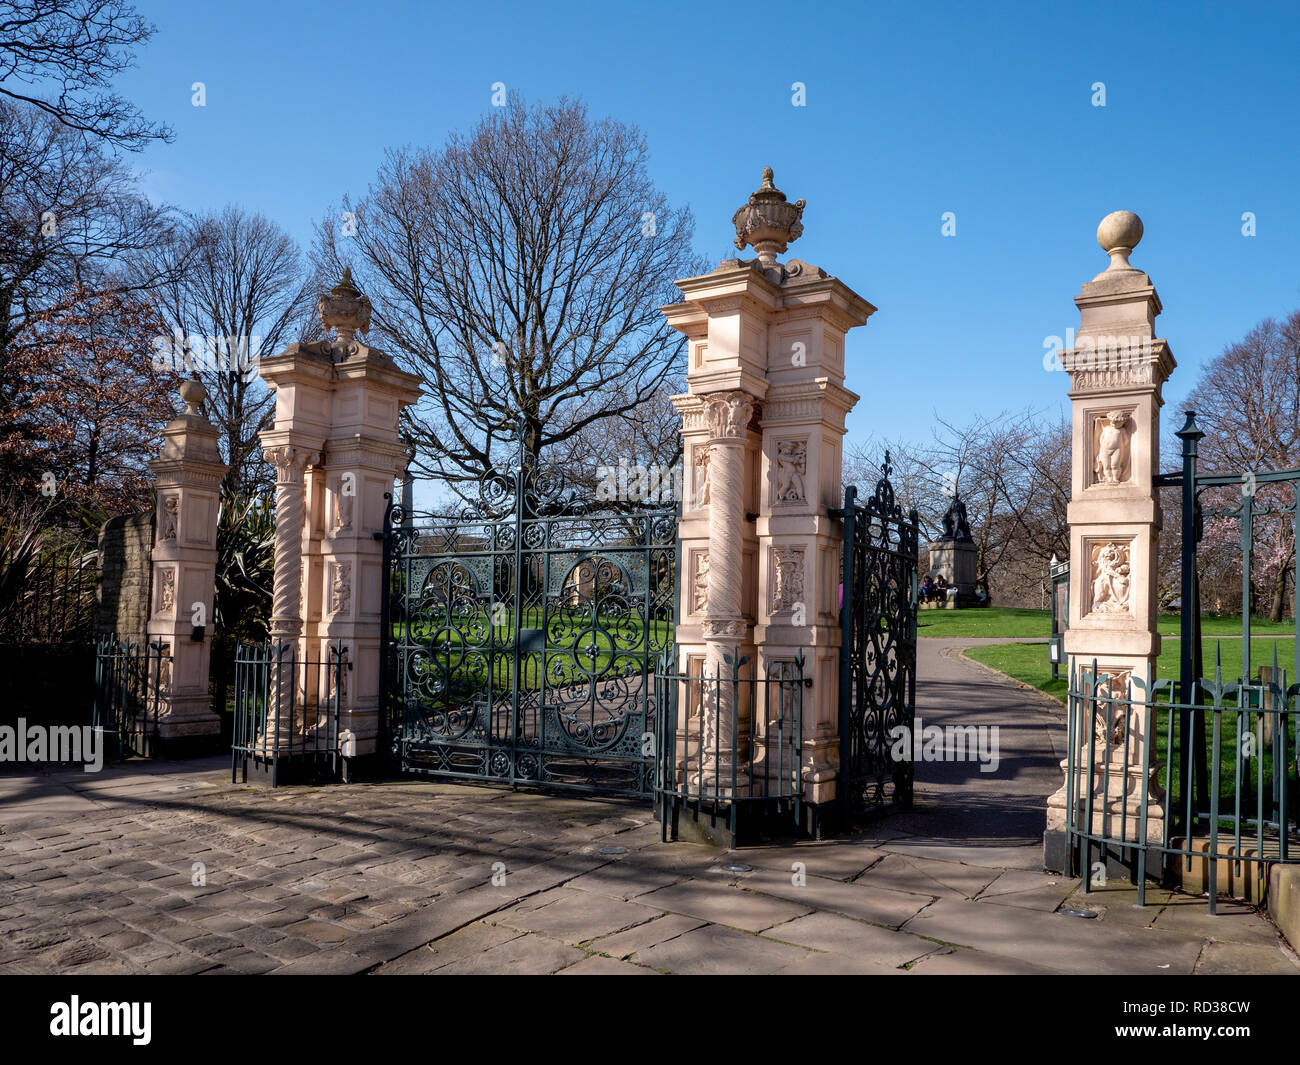 Entrance gates to Weston Park, Sheffield, South Yorkshire, England, UK. Stock Photo